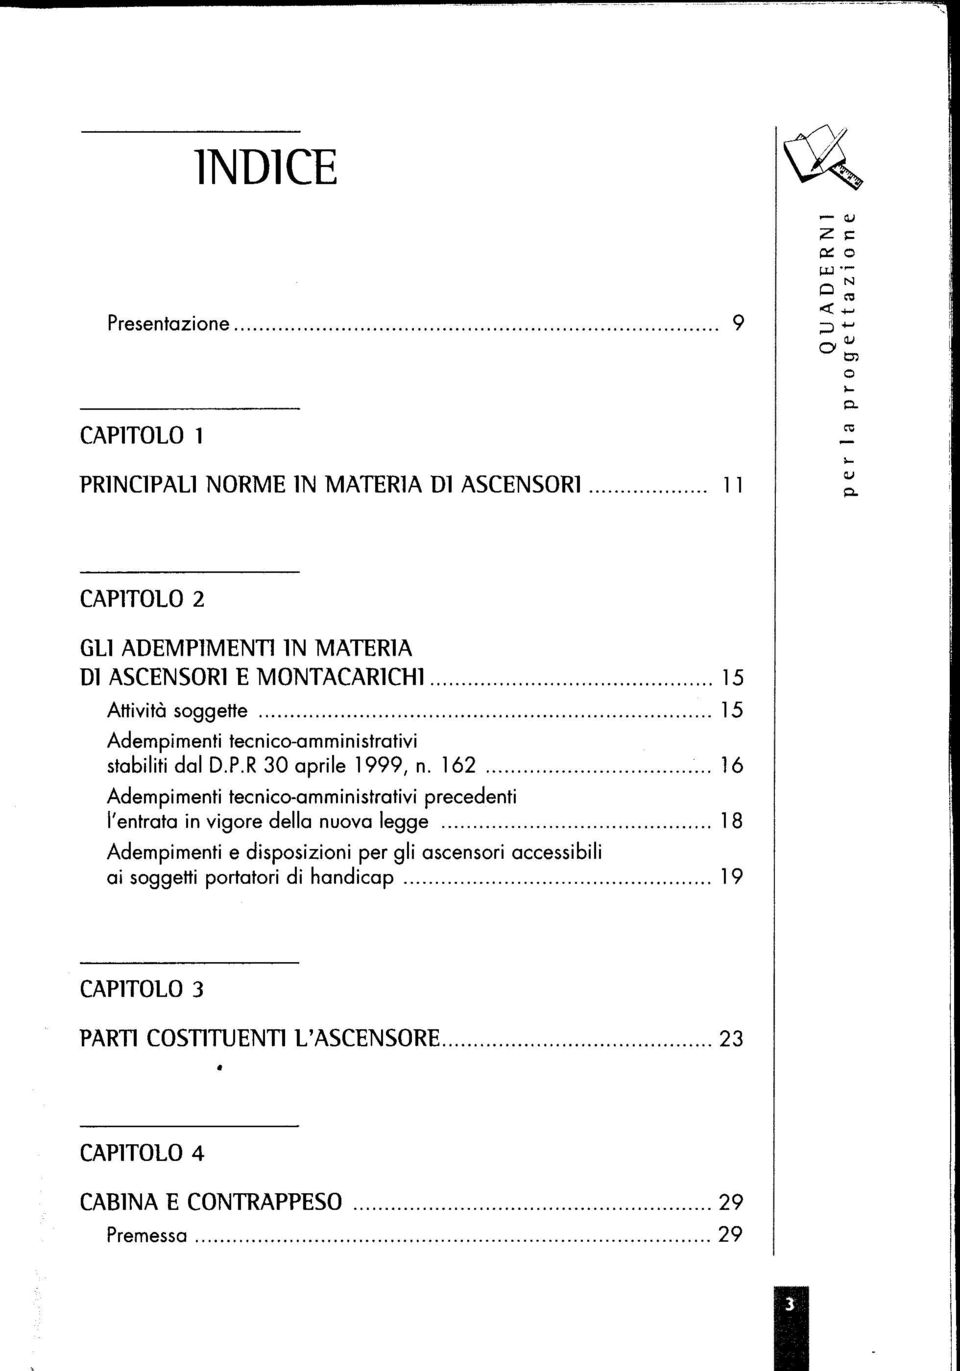 .. 15 Adempimenti tecnico-amministrativi stabiliti dal D.P.R 30 aprile 1999, n. 162.